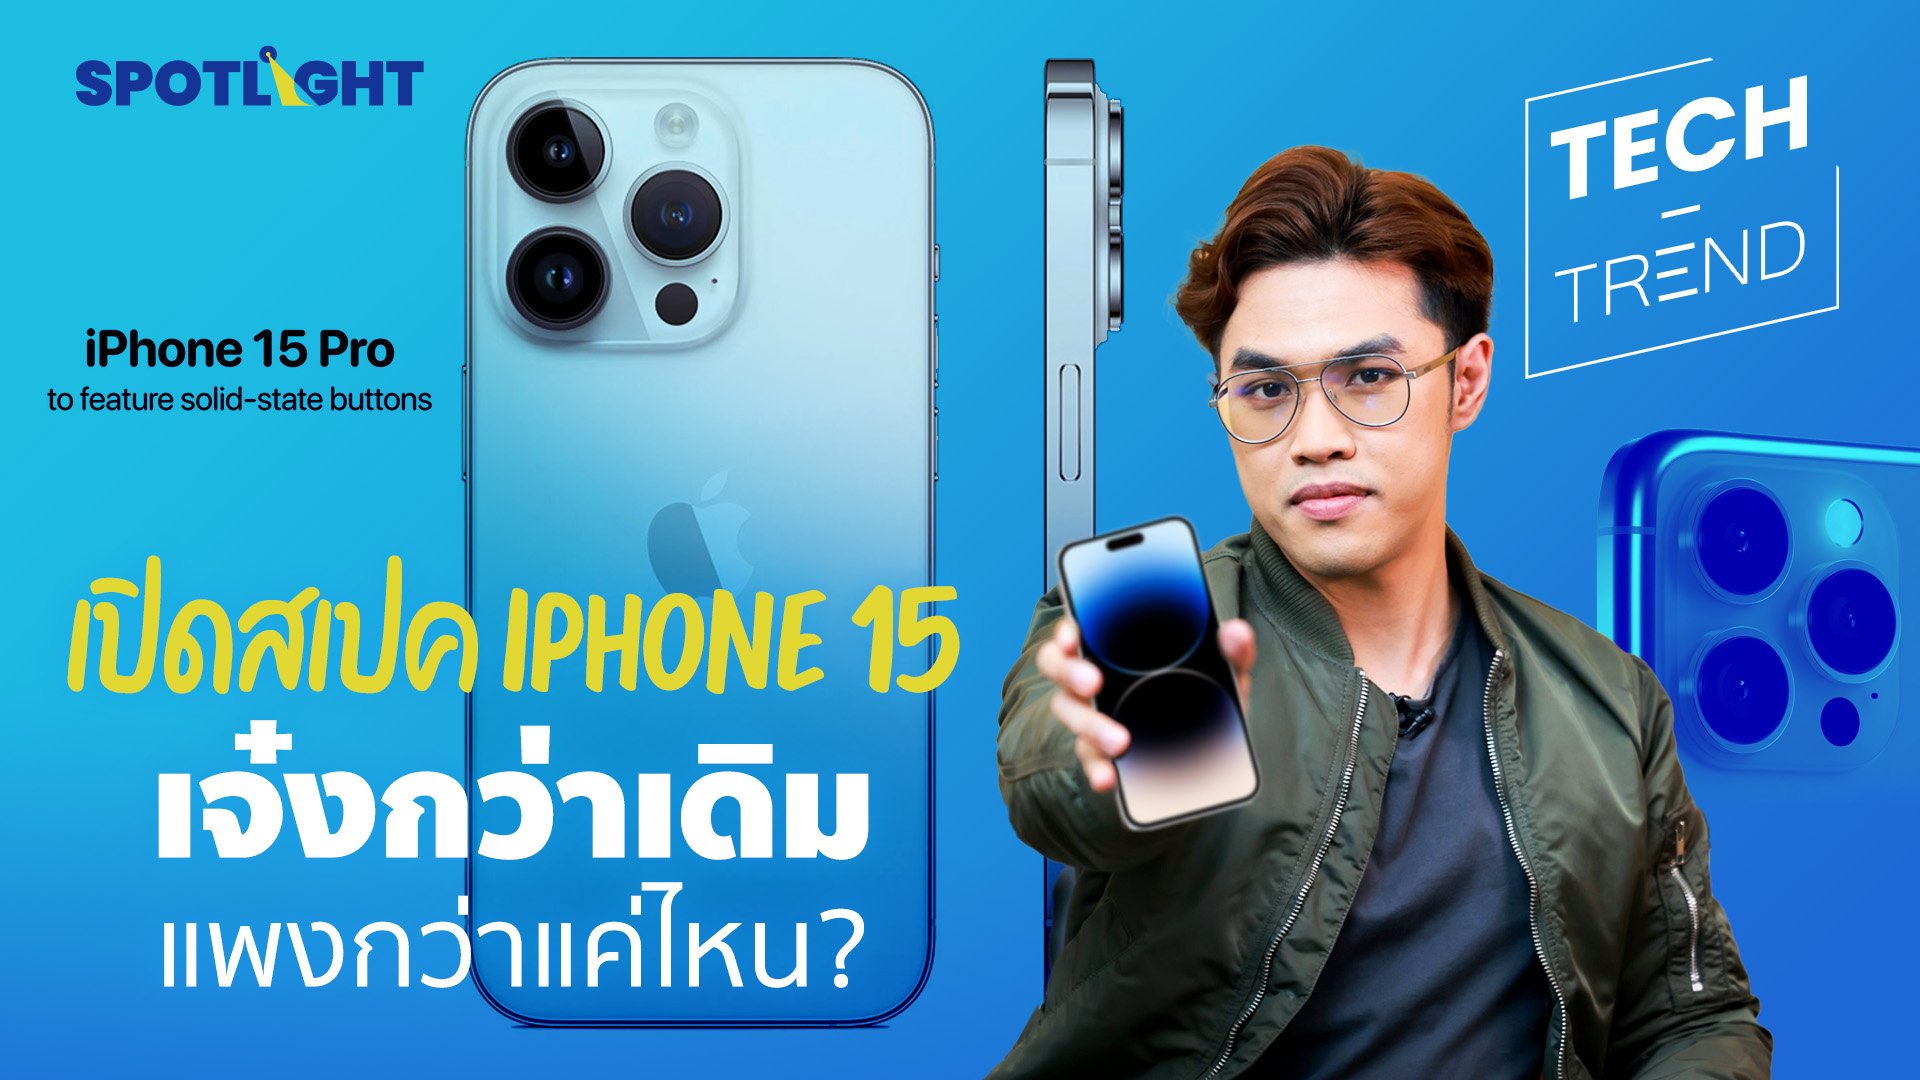 เปิดสเปค iPhone 15 เจ๋งกว่าเดิม แพงกว่าแค่ไหน ?  | Spotlight | 2 มี.ค. 66 | AMARIN TVHD34